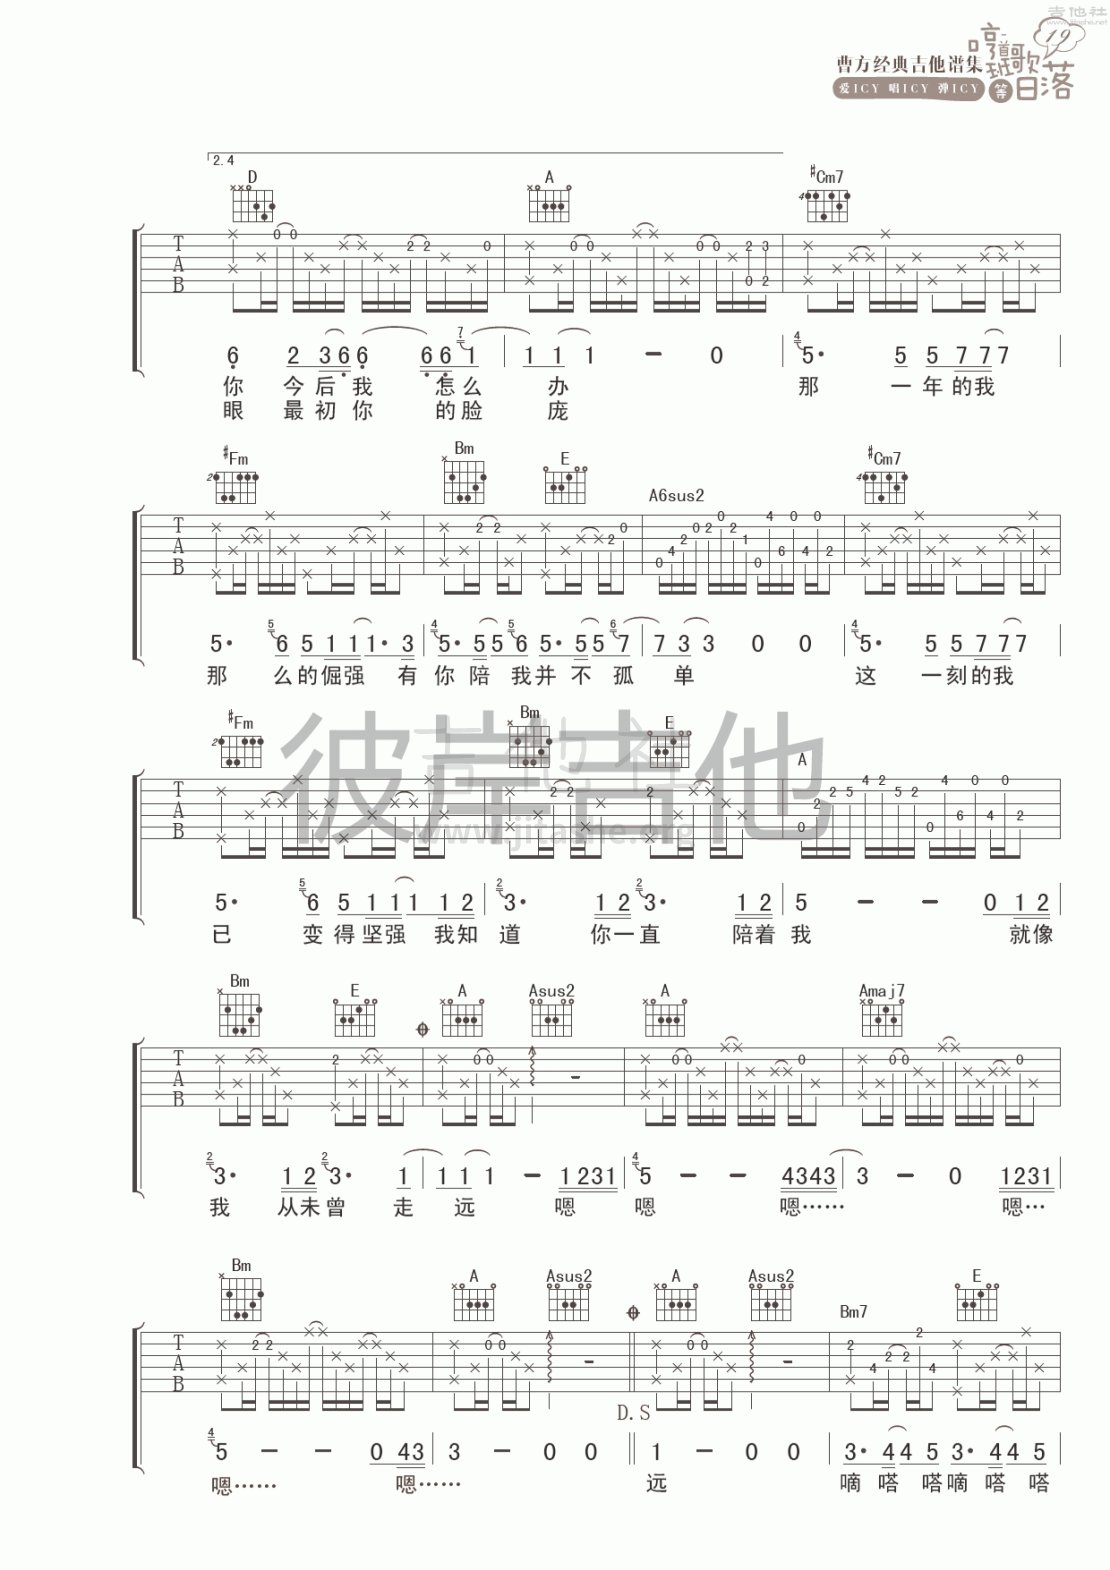 纪念册吉他谱(图片谱,彼岸吉他,弹唱)_曹方(Icy;班长;曹芳)_纪念册 2.gif